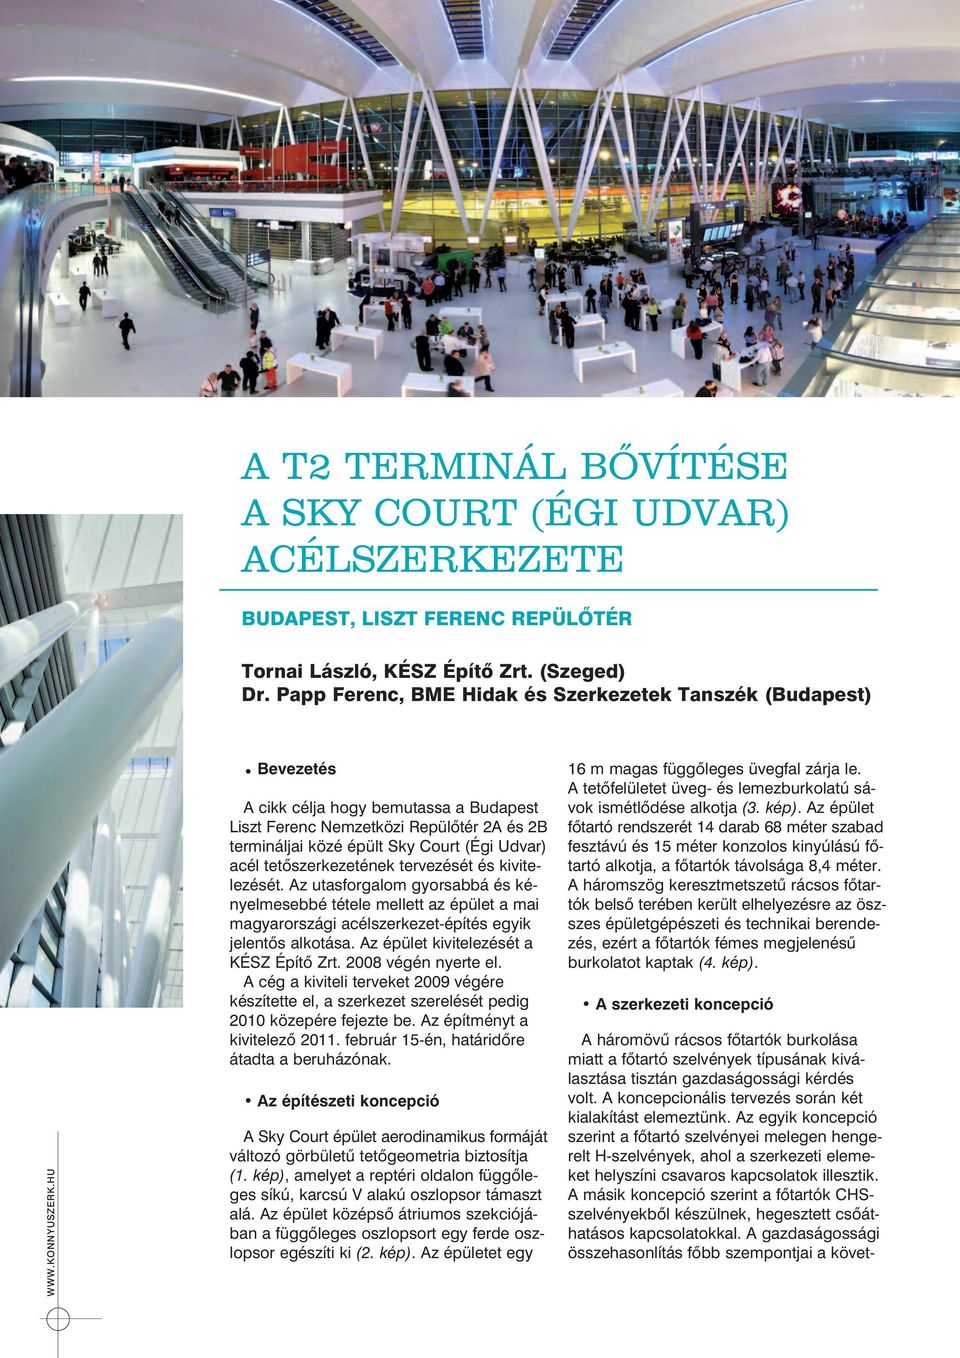 HU Bevezetés A cikk célja hogy bemutassa a Budapest Liszt Ferenc Nemzetközi Repülõtér 2A és 2B termináljai közé épült Sky Court (Égi Udvar) acél tetõszerkezetének tervezését és kivite - le zését.